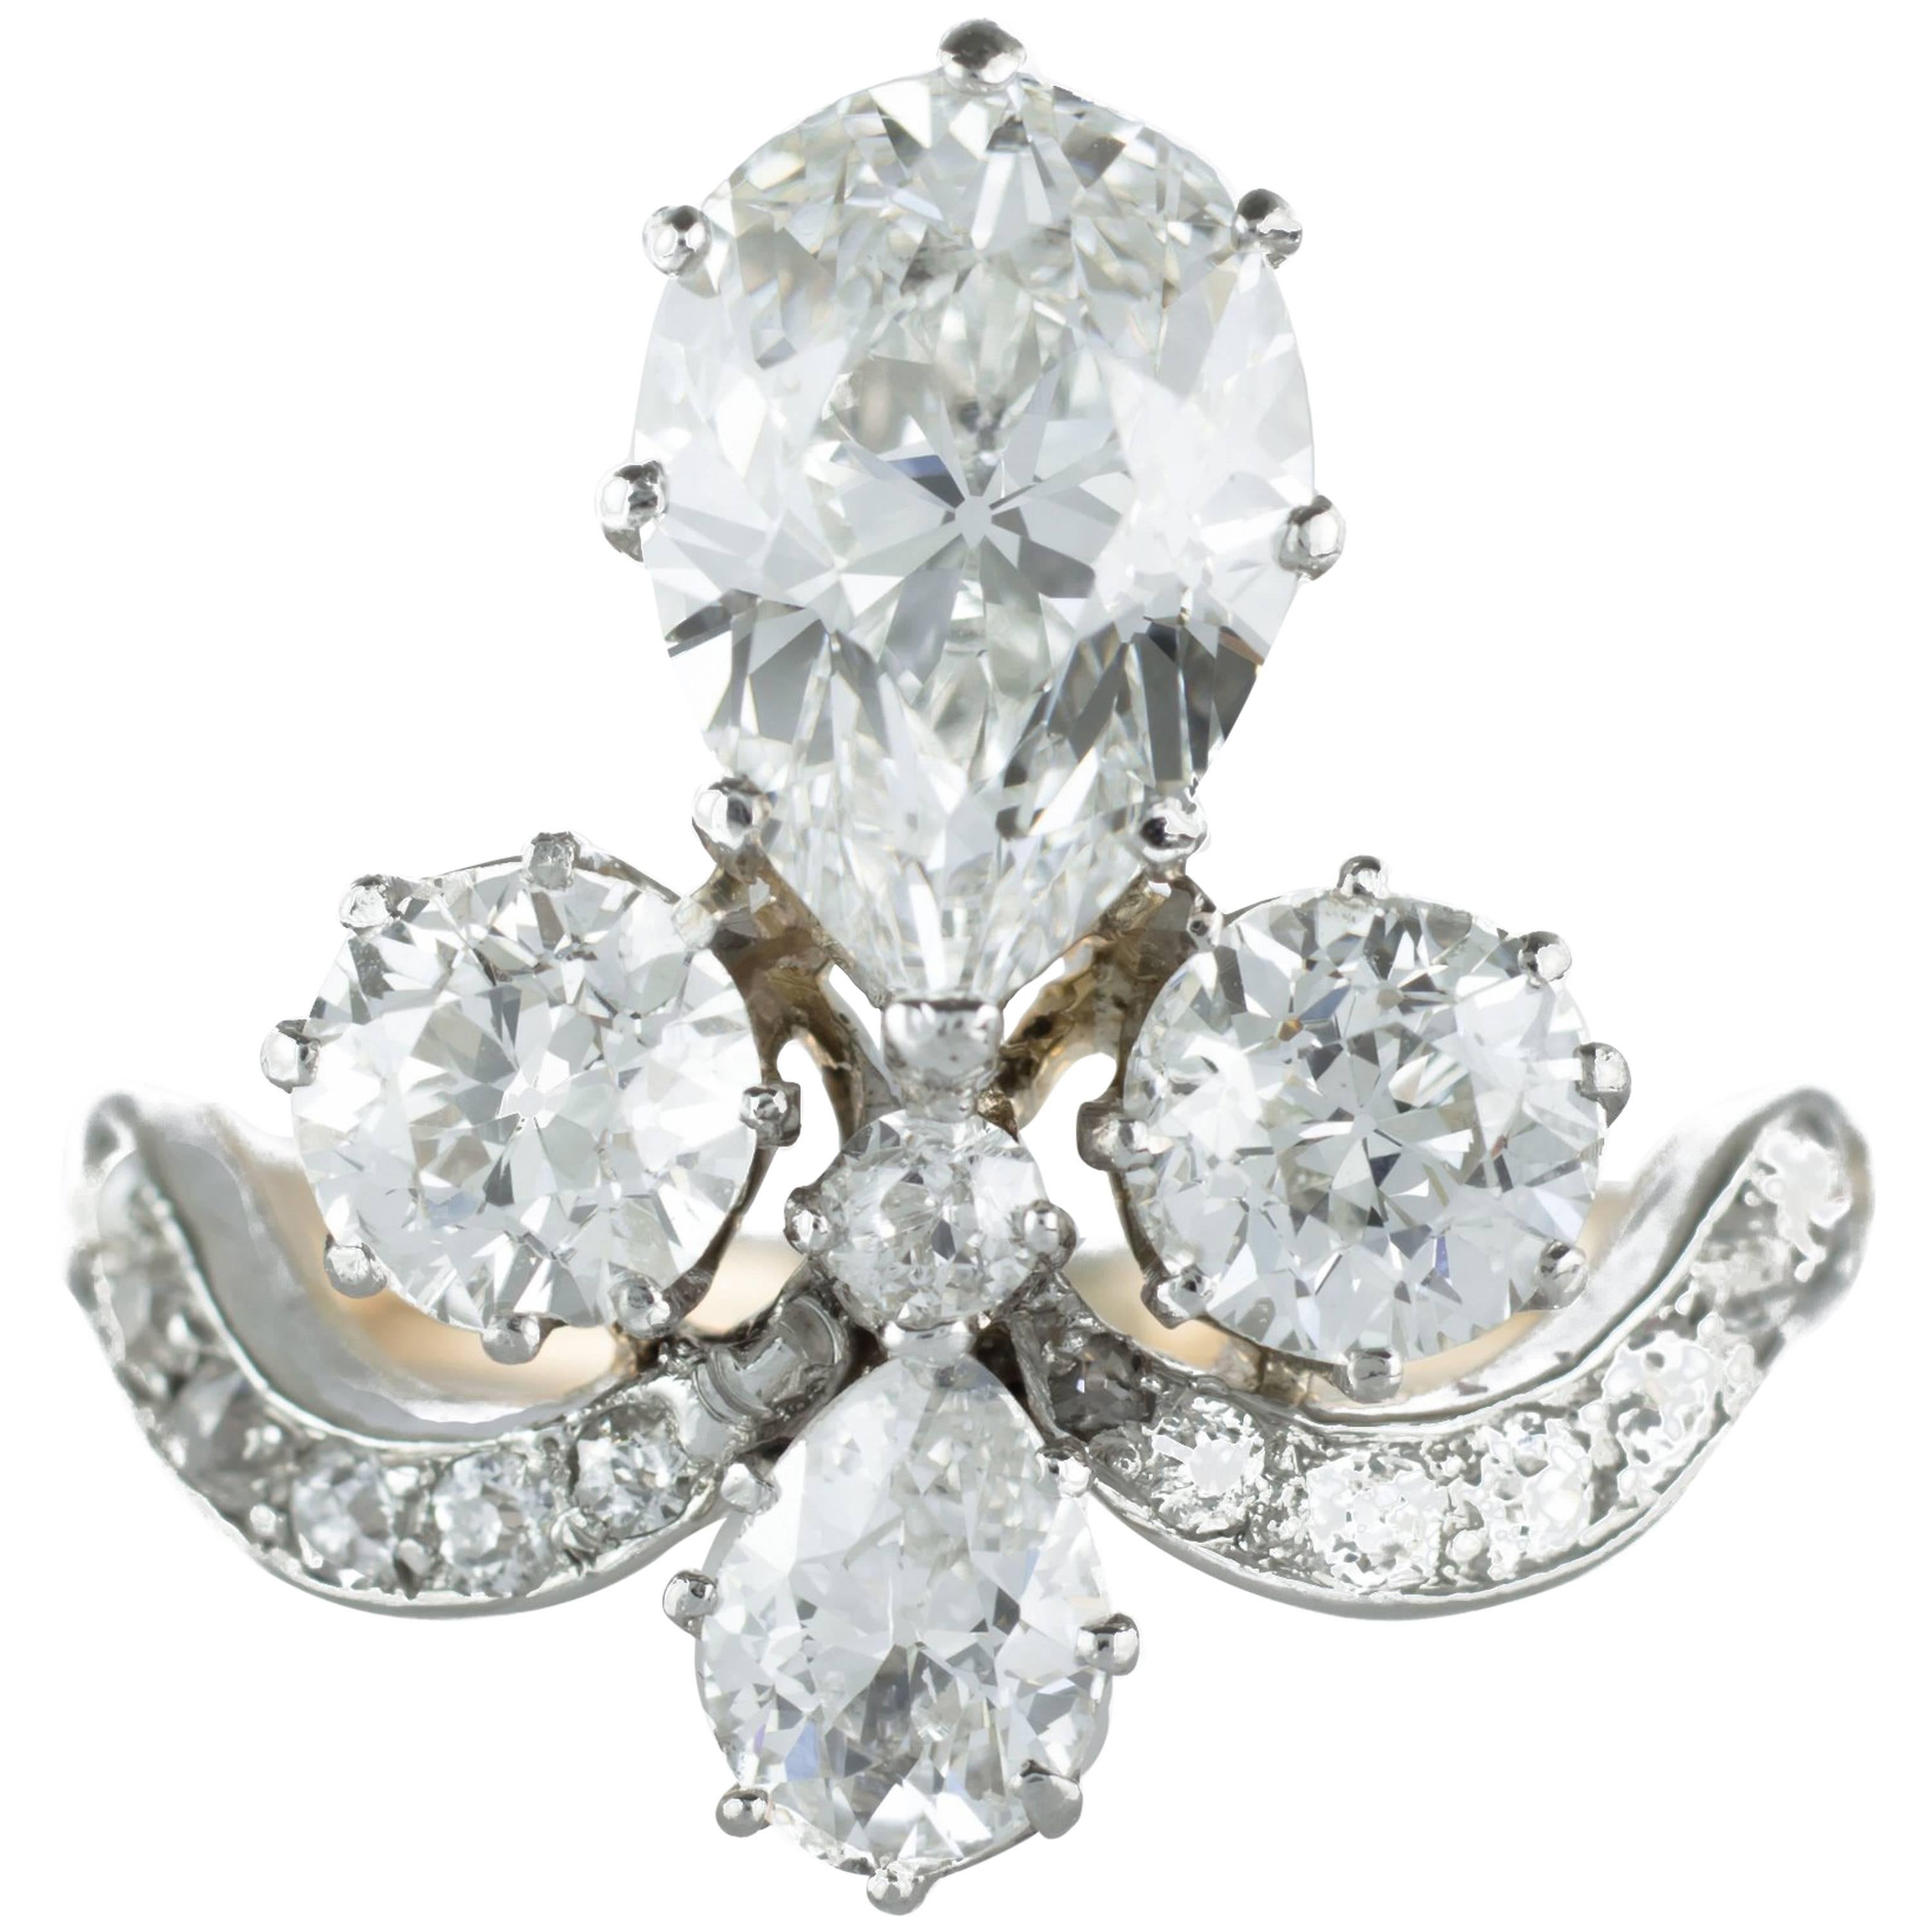 Original Antique Tiara Ring or "Bague Duchesse" Total Carat Weight 3.7 Carat